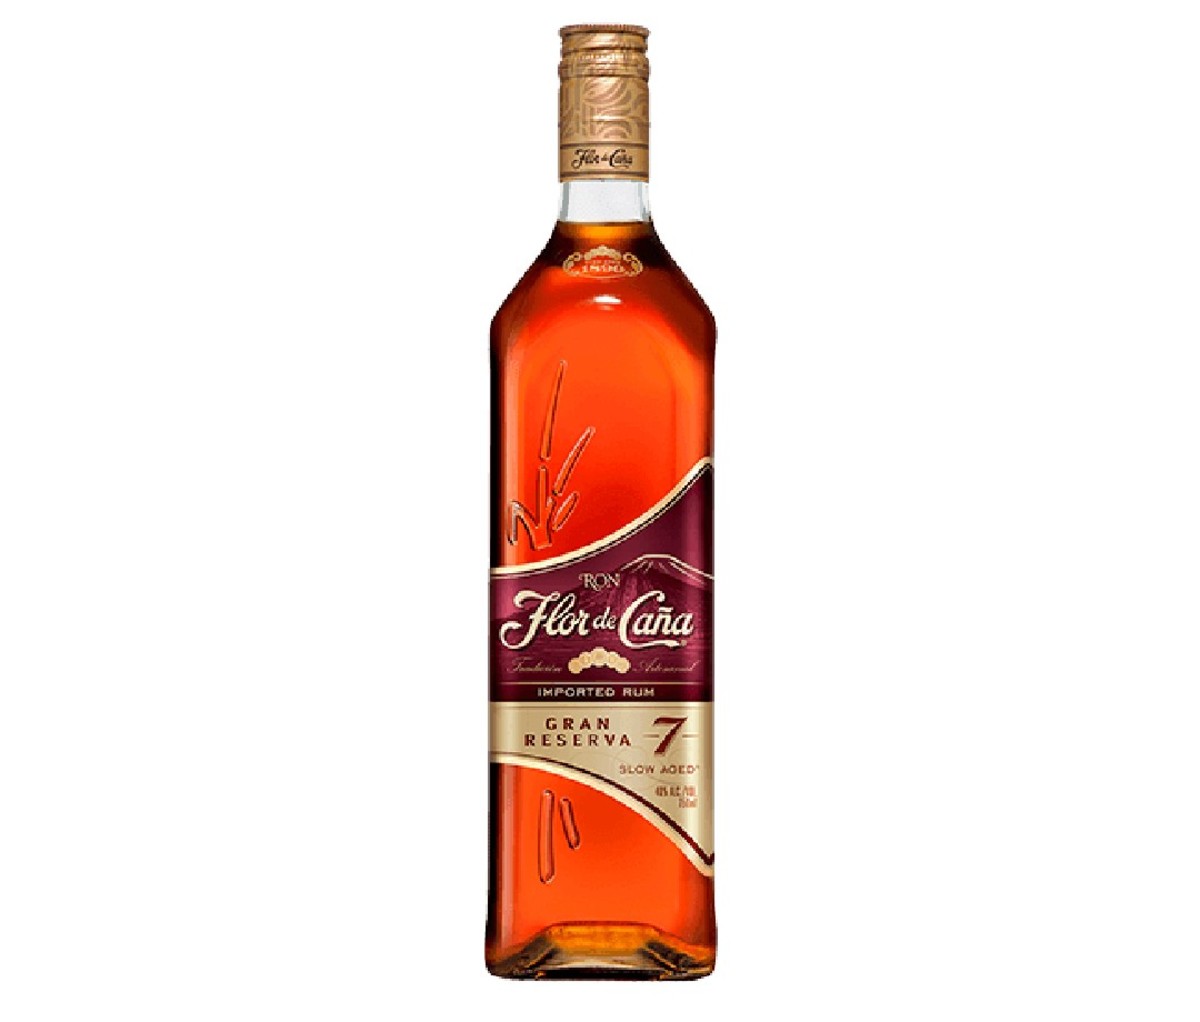 Bottle of Flor De Cana 7 Year Gran Reserva dark rum